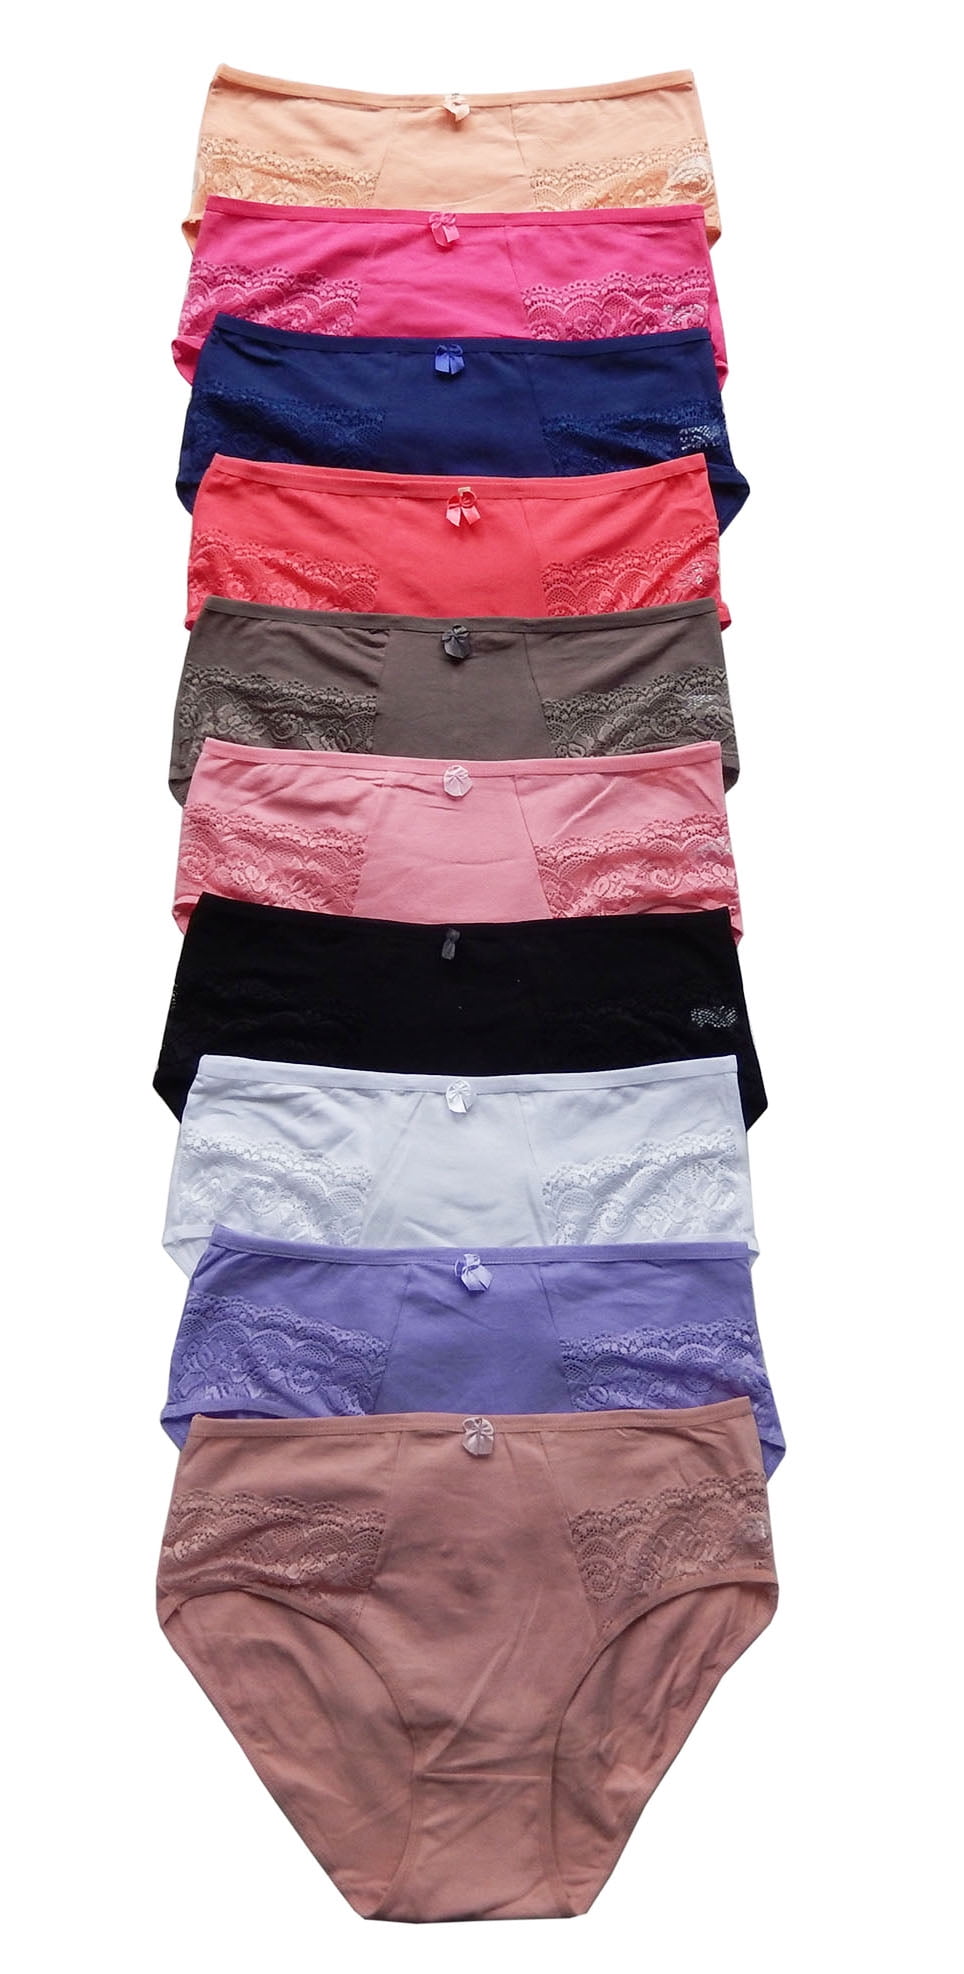 Silverts Women Cotton Brief Extra Plus Size 3-Pack Underwear, 4XL, 3-Pack